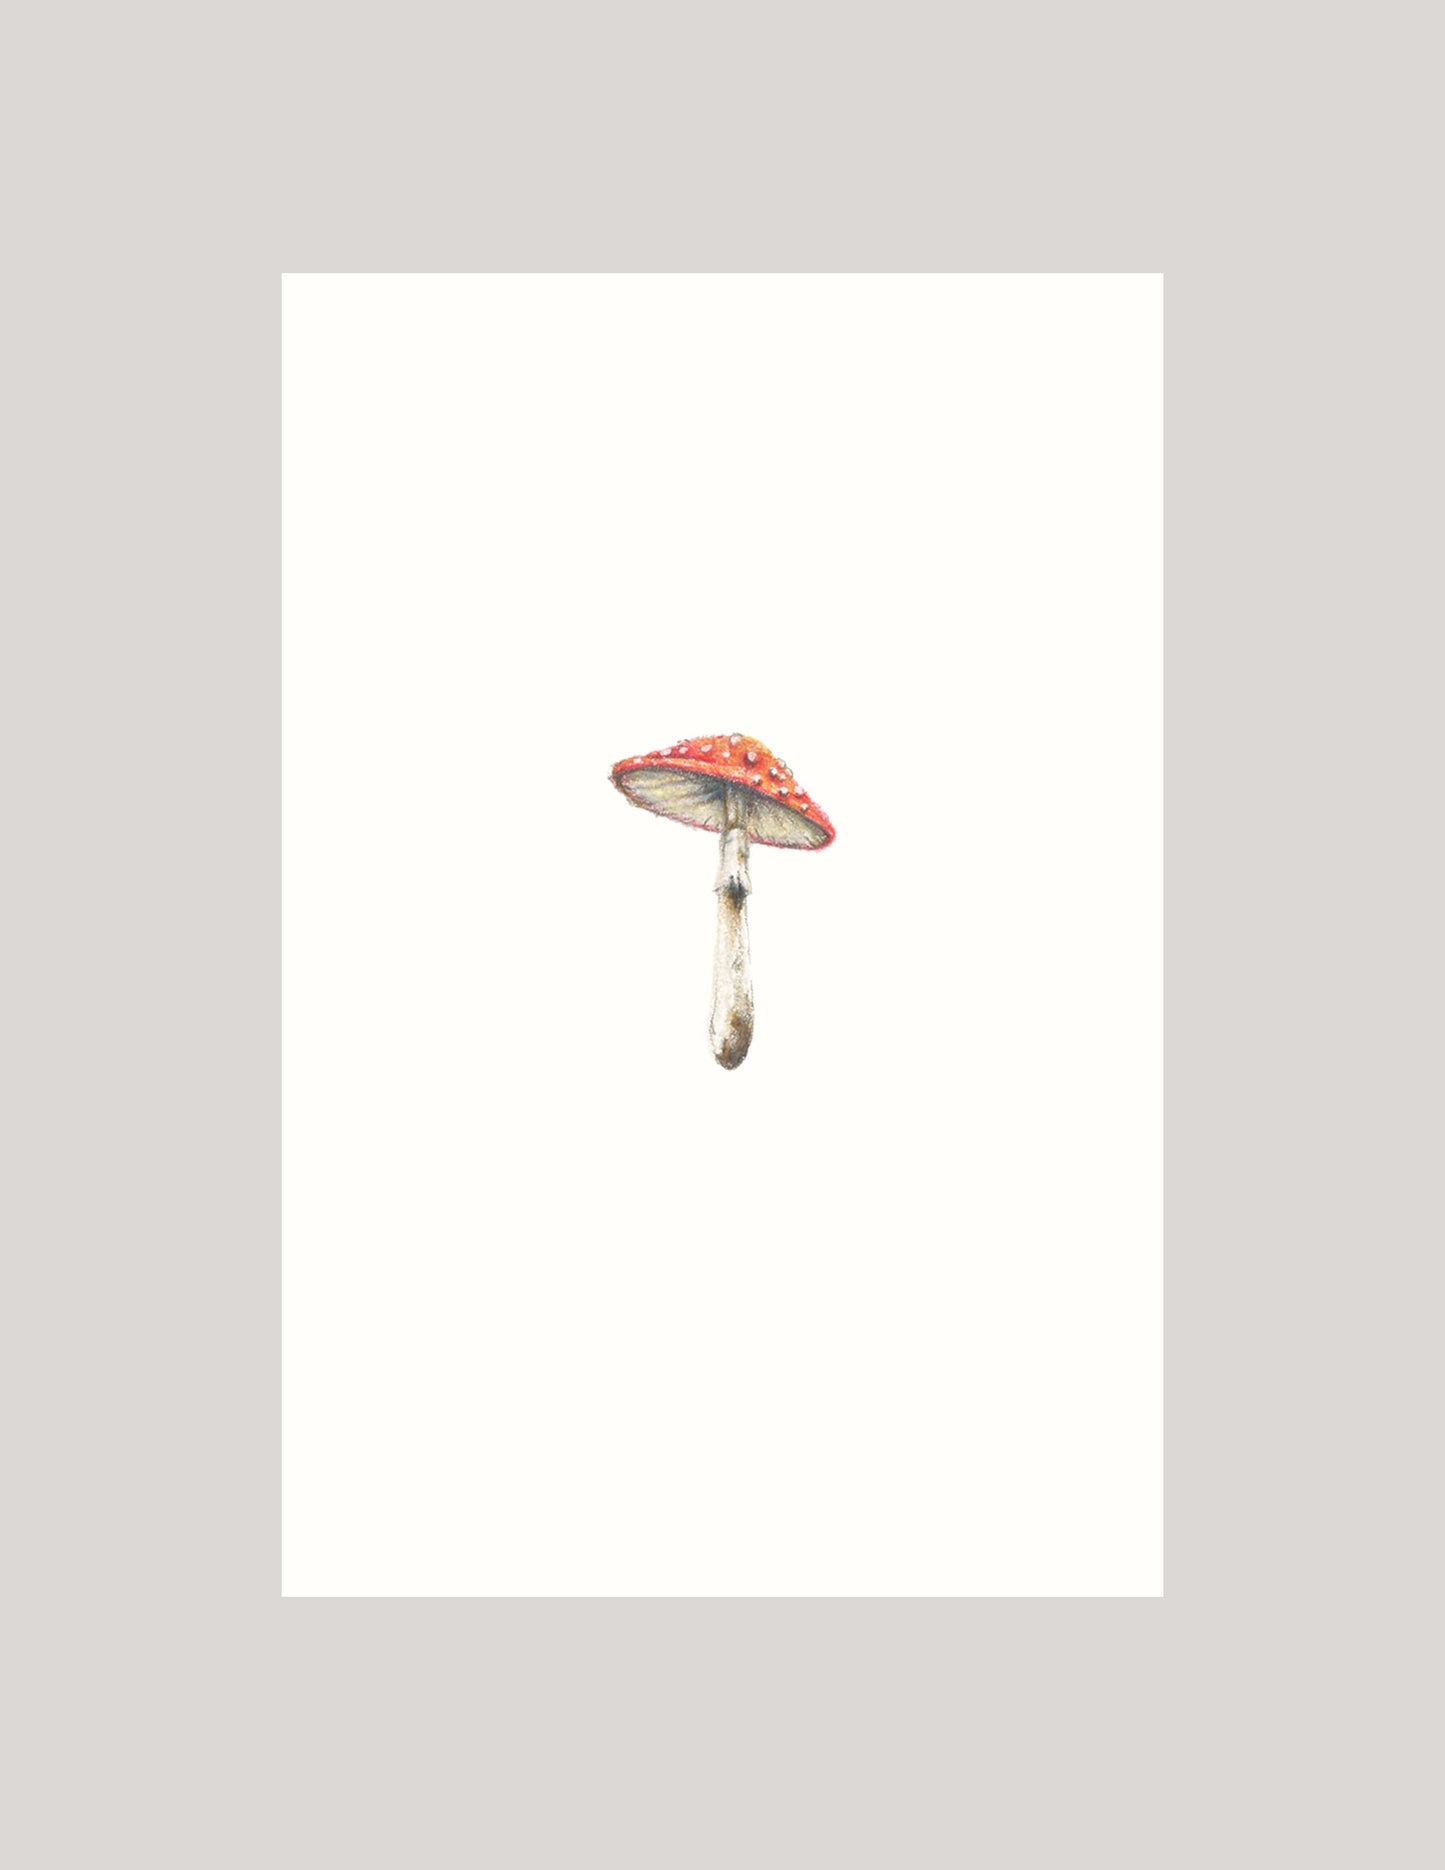 Mini amanita muscaria mushroom - Illustration Print